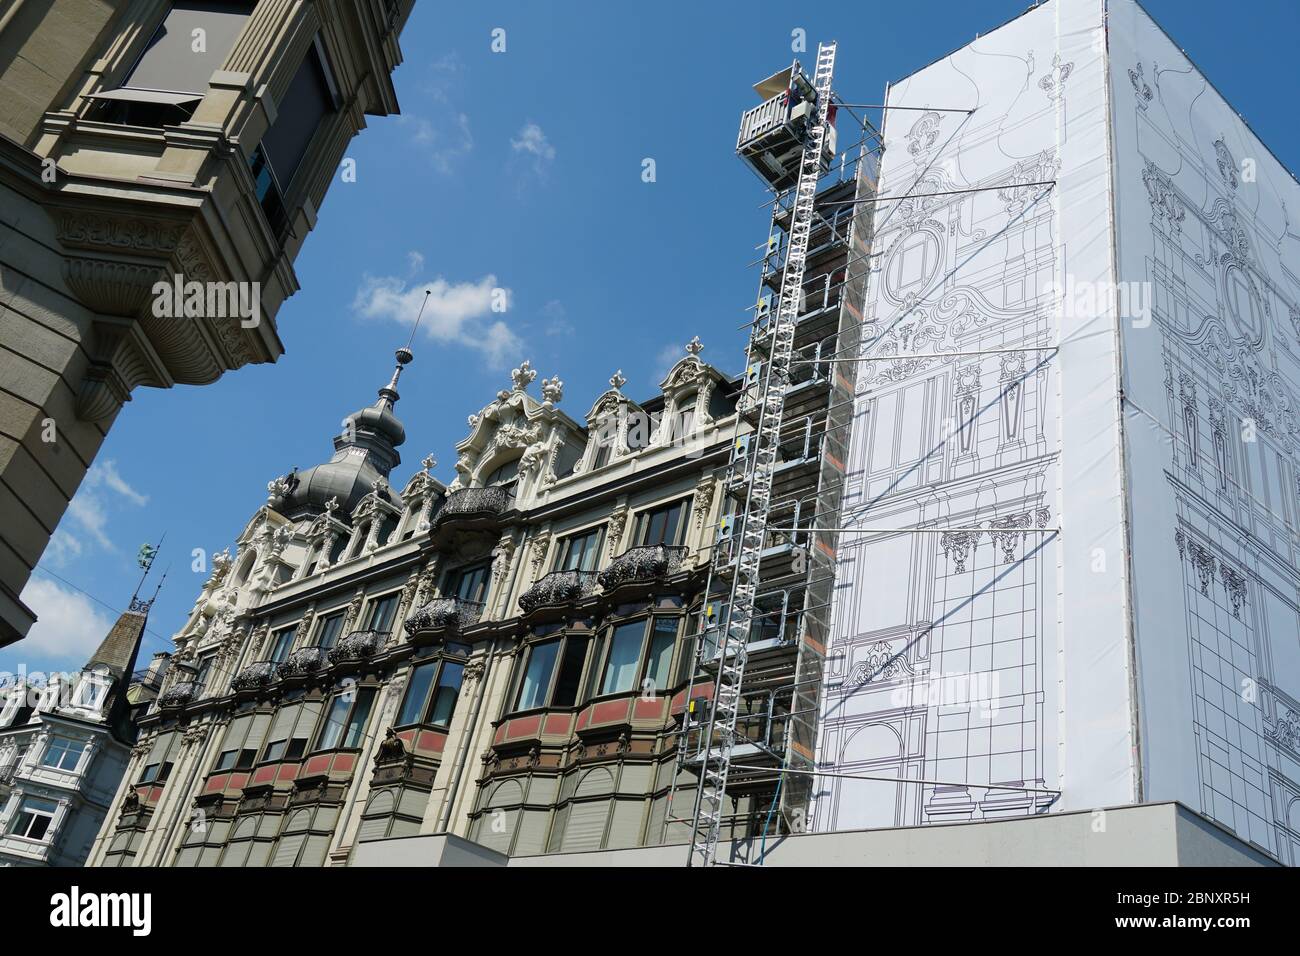 Centro histórico de la ciudad de Zurich en la reconstrucción, las fachadas de los edificios históricos están cubiertas por una gruesa red de protección blanca, vista lateral Foto de stock